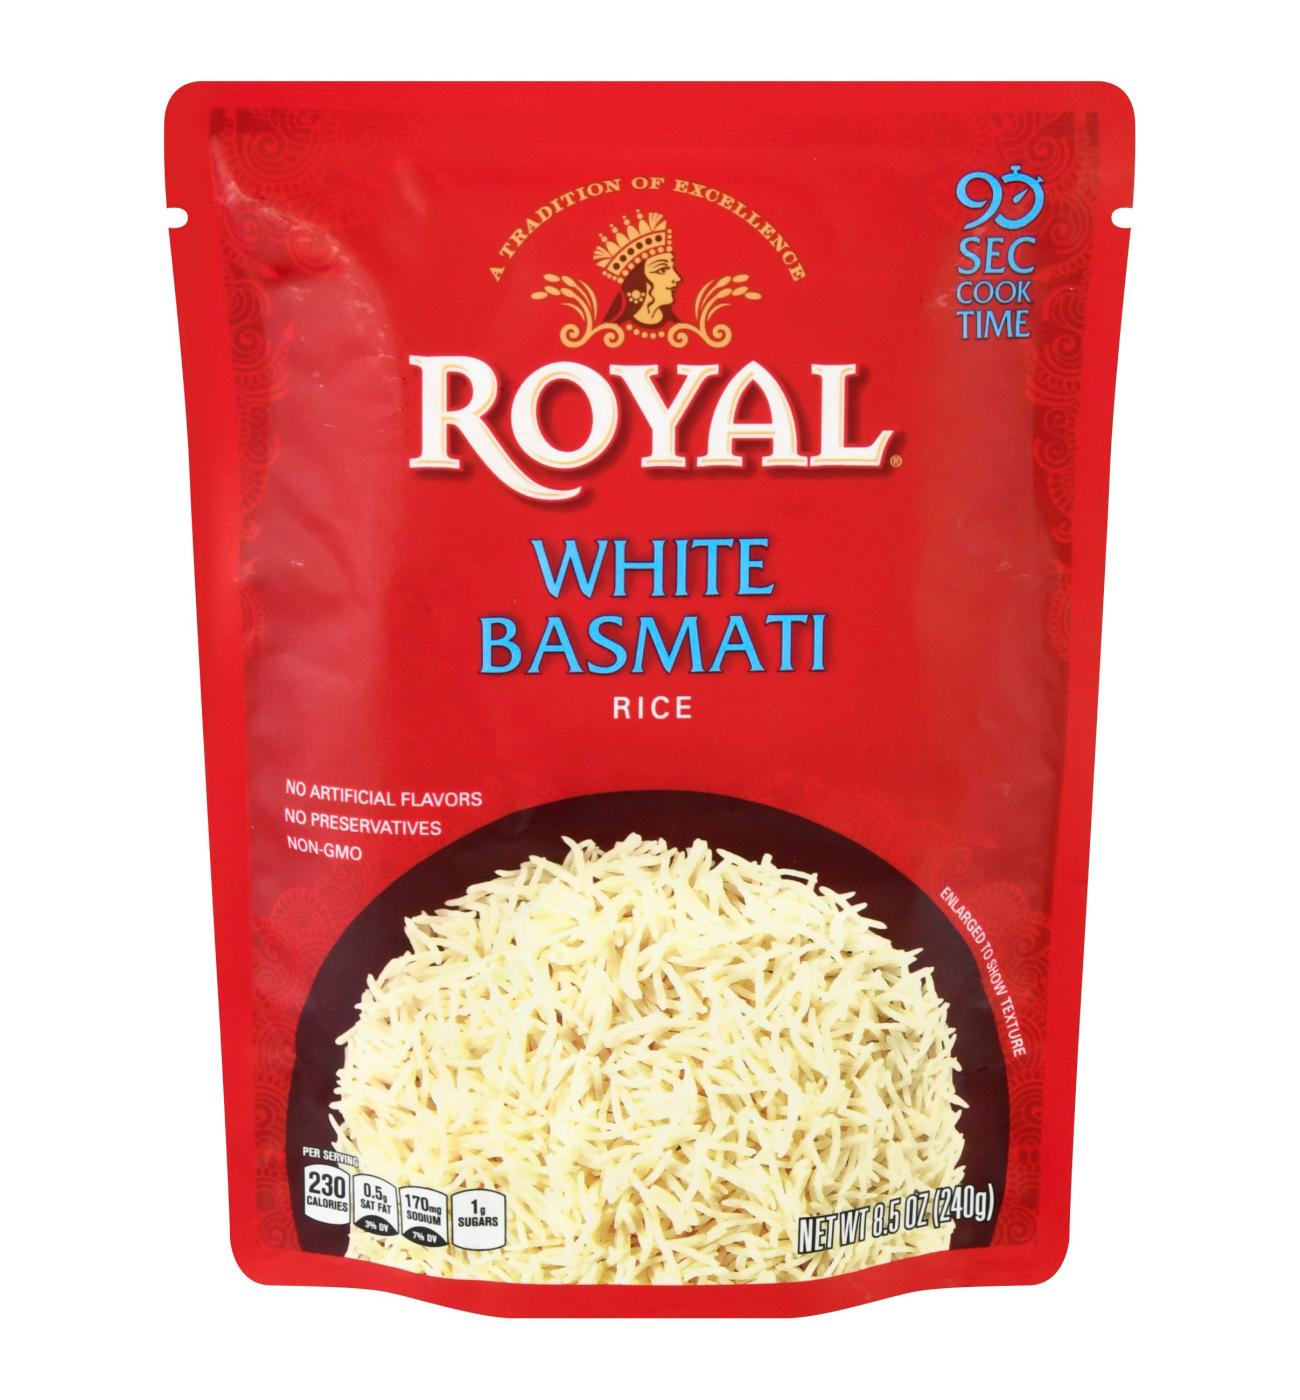 Royal White Basmati Rice